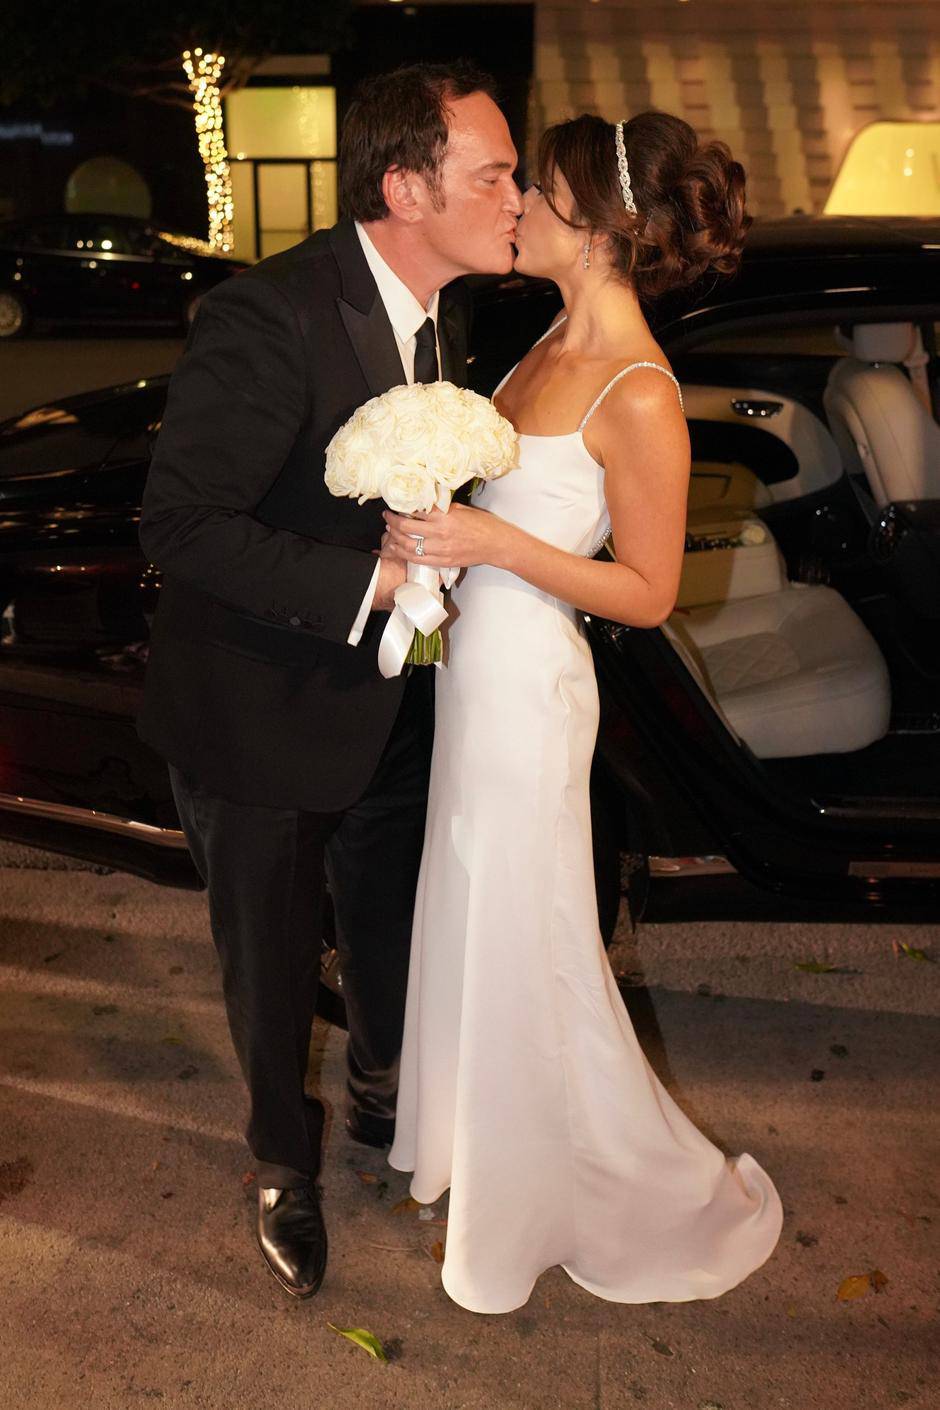 Celebrity vjenčanja: Ovi parovi su 2018. uplovili u bračnu luku